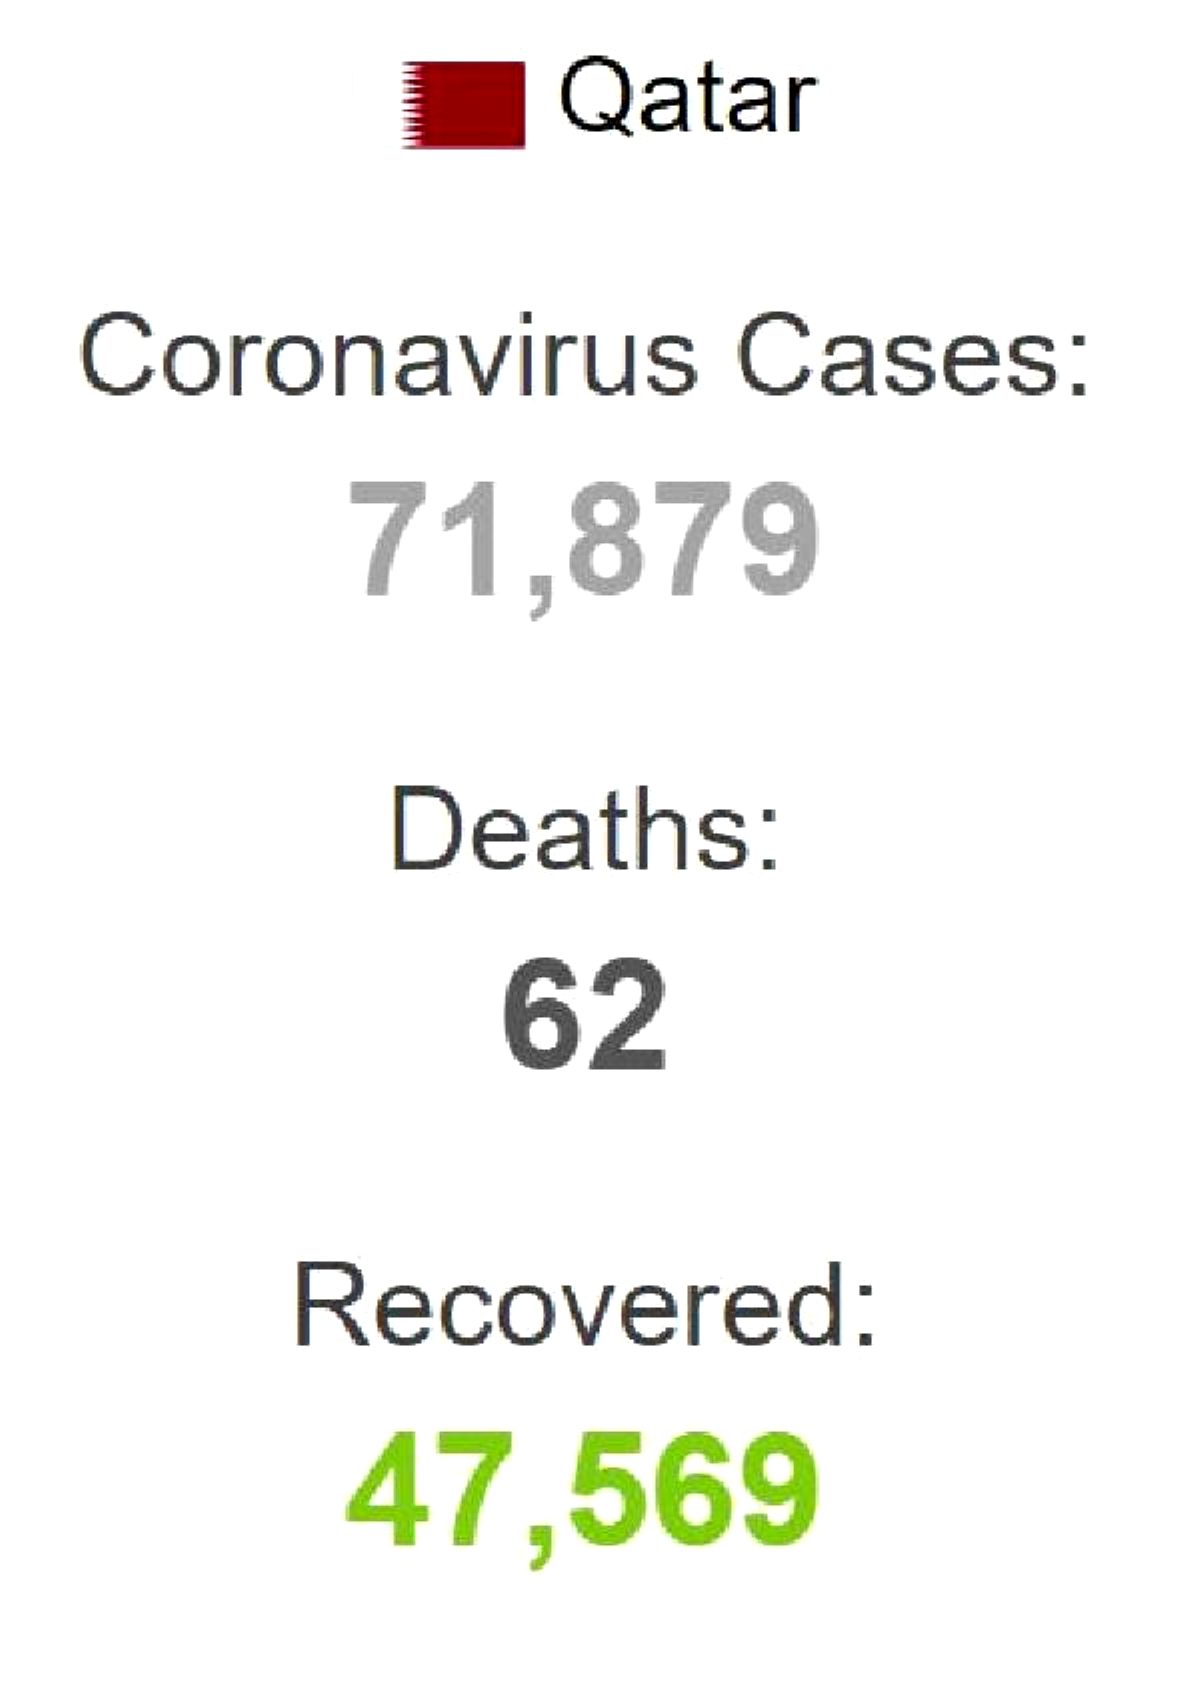 Katar'da son 24 saatte 1,721 kişi daha koronavirüse yakalandı